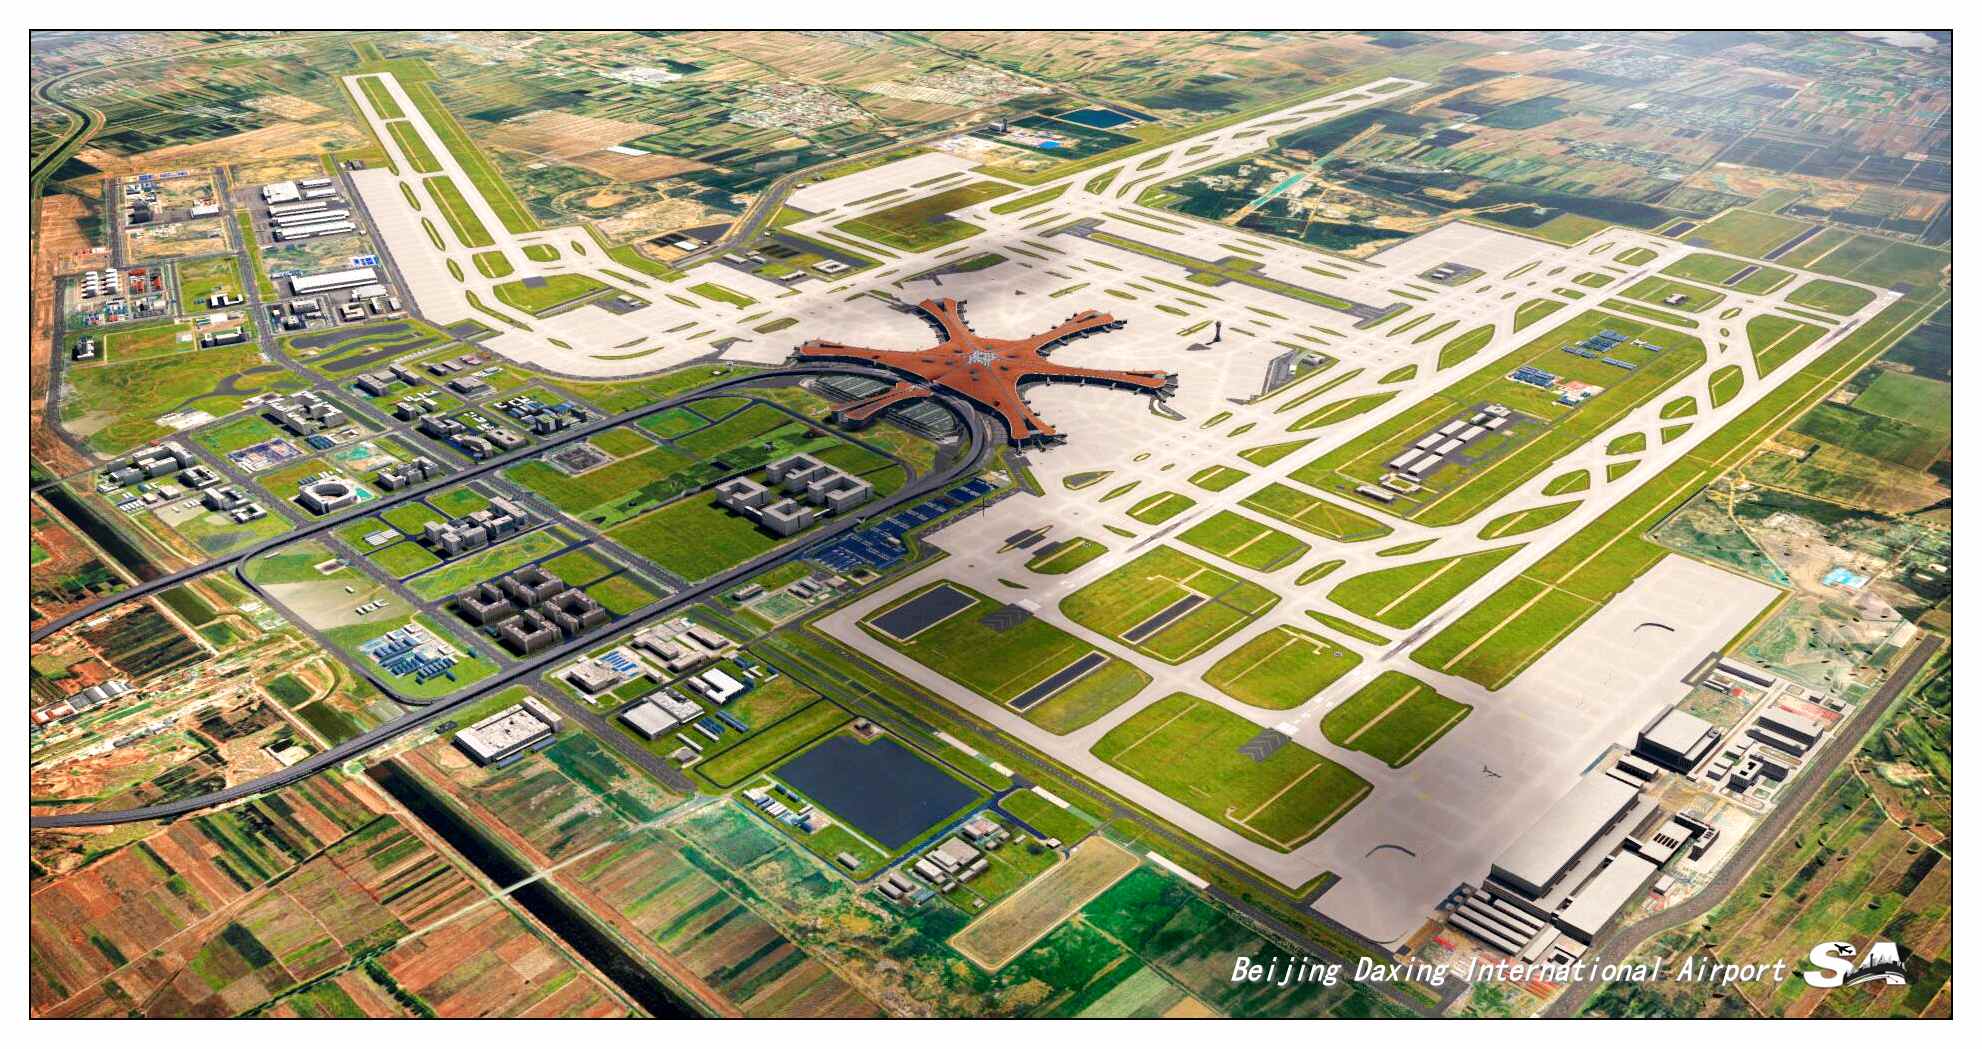 【X-Plane】ZBAD北京大兴国际机场-正式发布-6665 